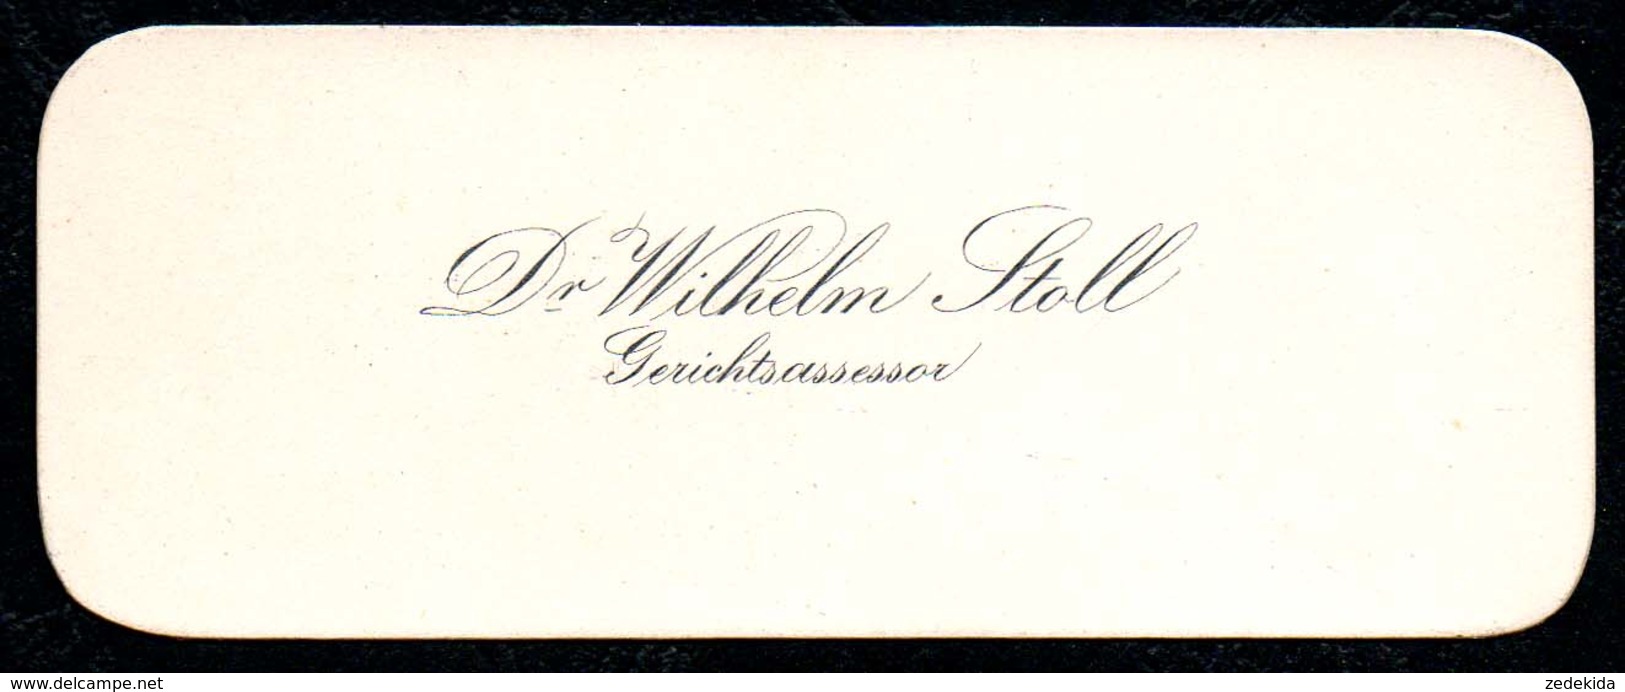 B7353 - Dr. Wilhelm Stoll - Gerichtsassessor - Visitenkarte - Visitenkarten